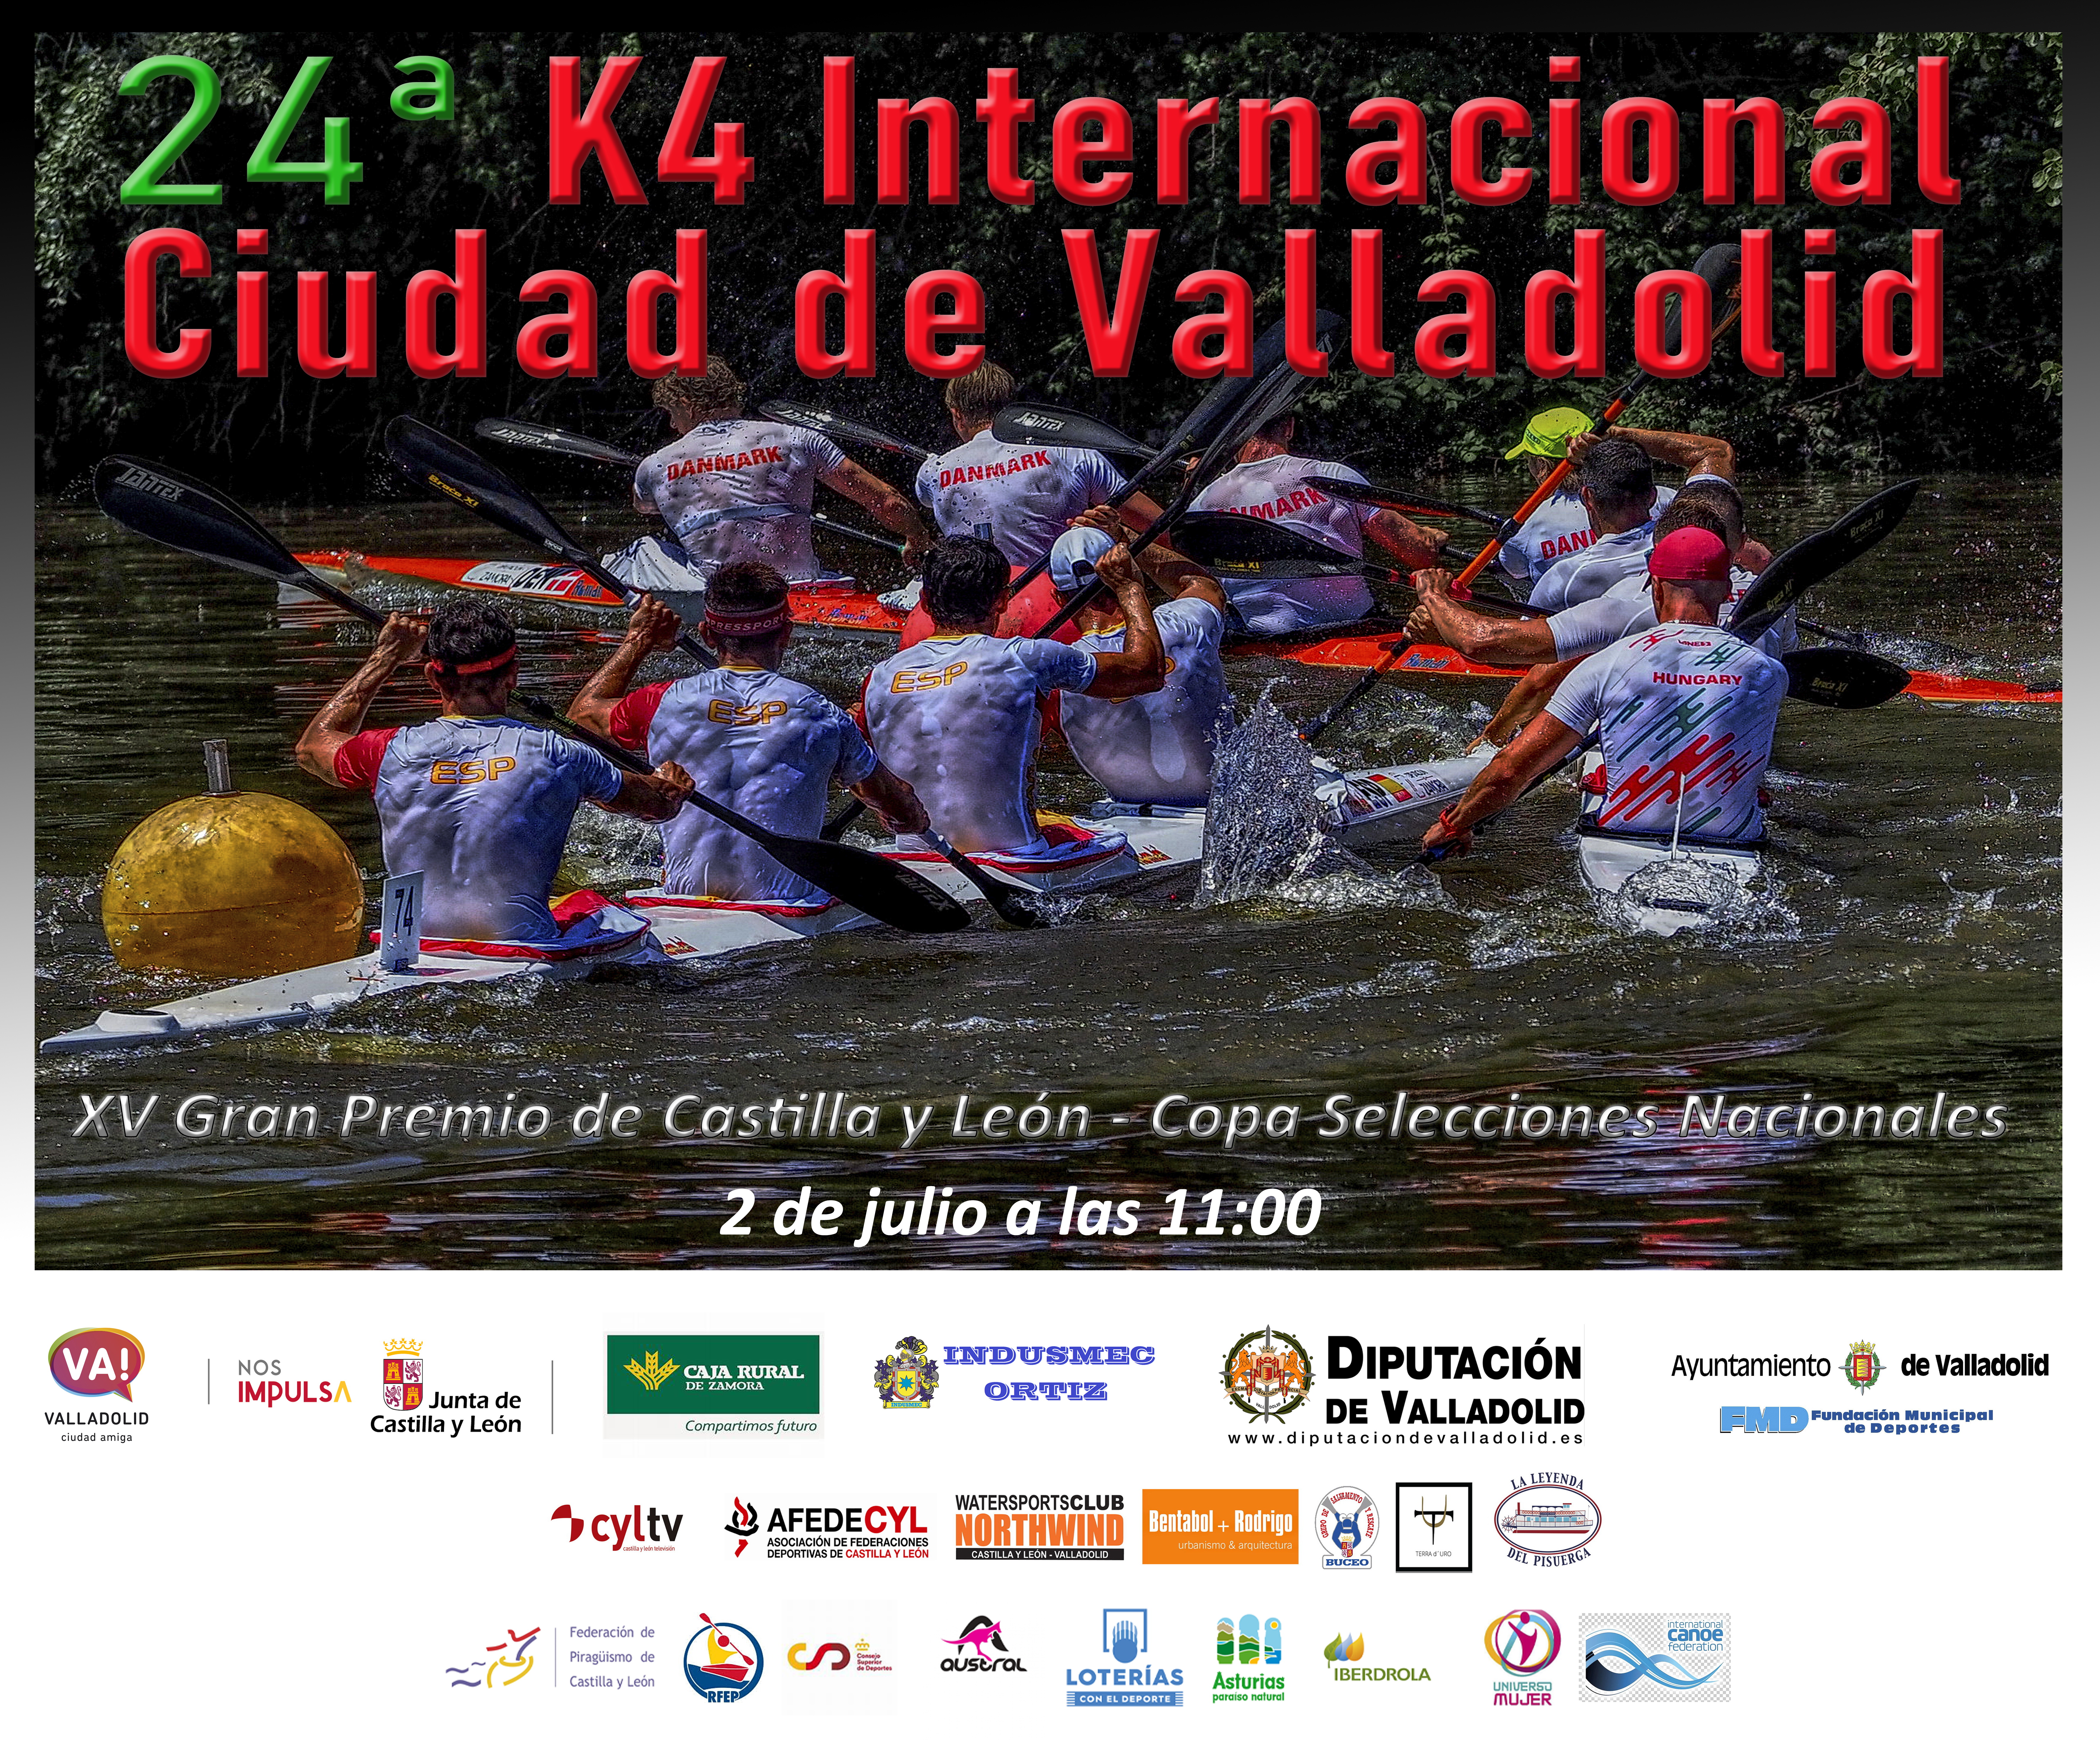 Foto del Gran Premio Internacional K-4 XXIV trofeo Ciudad de Valladolid